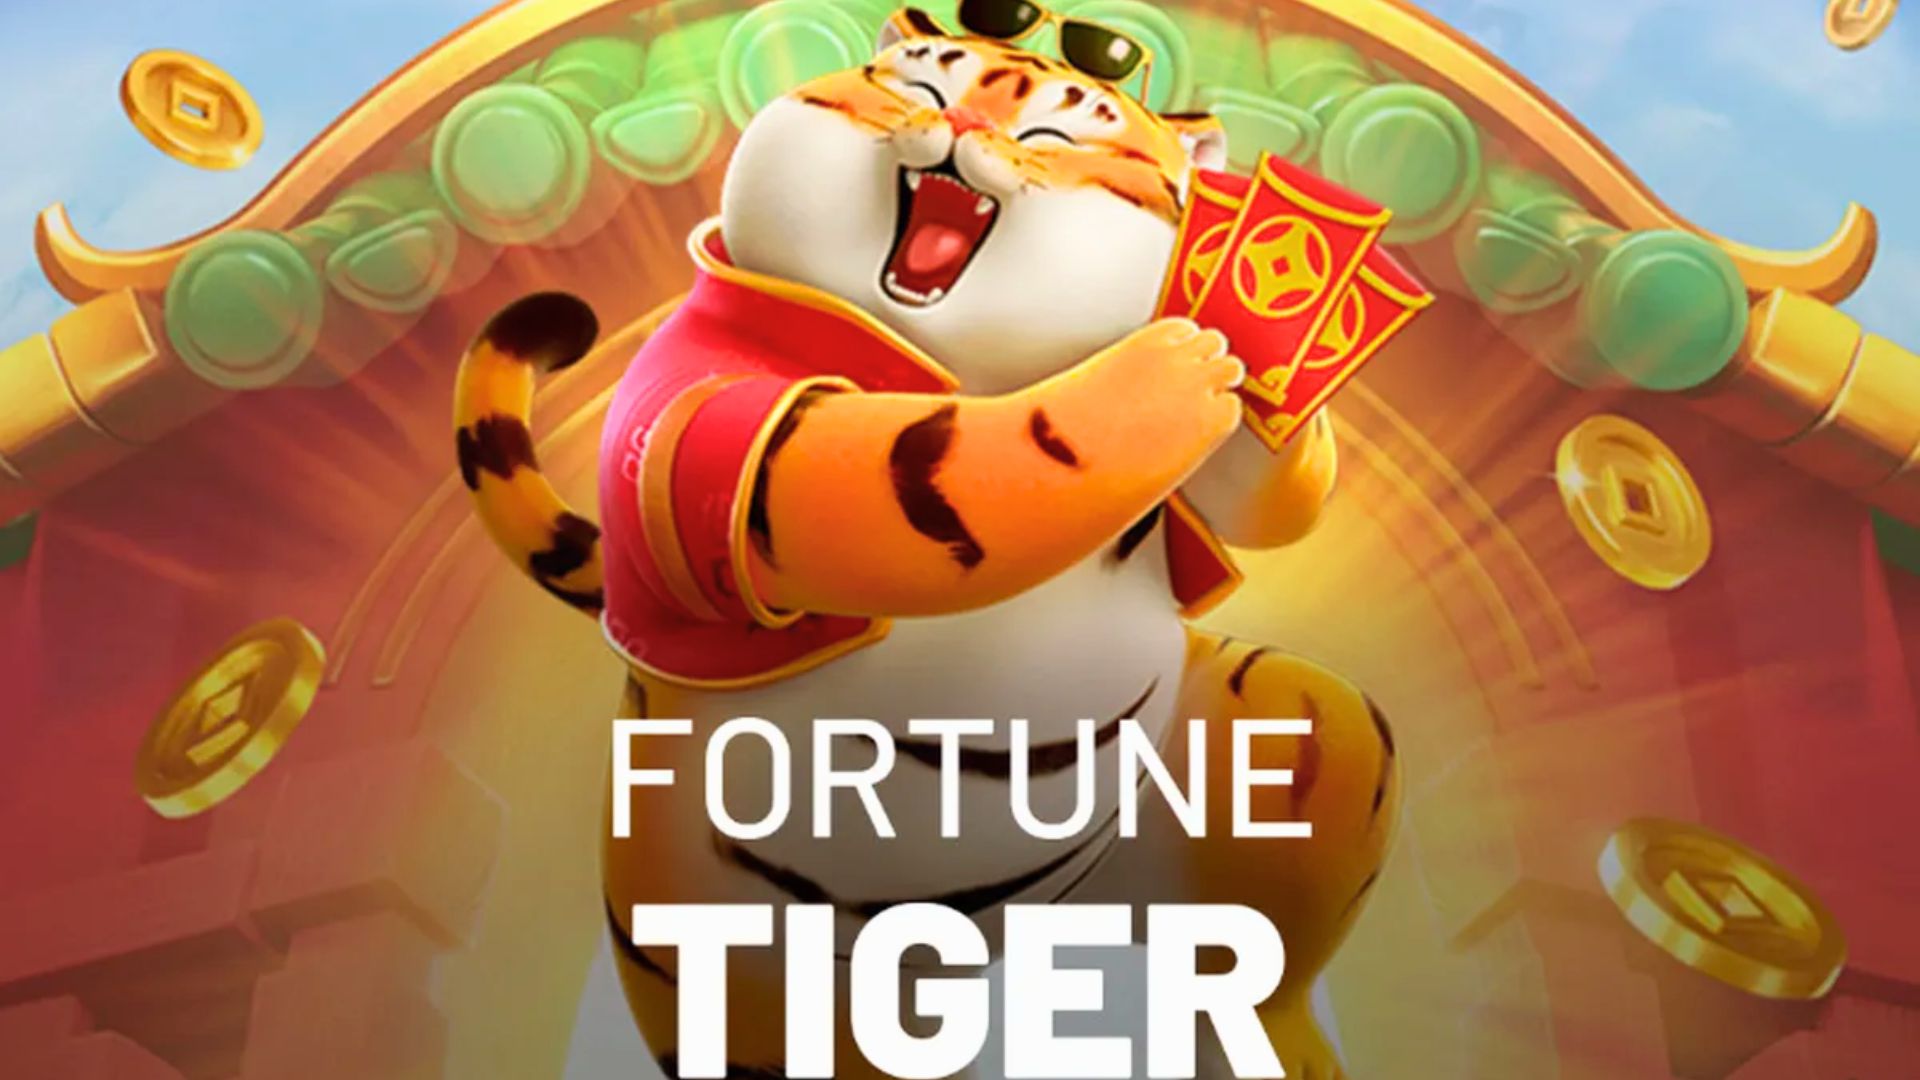 Fortune Tiger - Jogo do Tigrinho